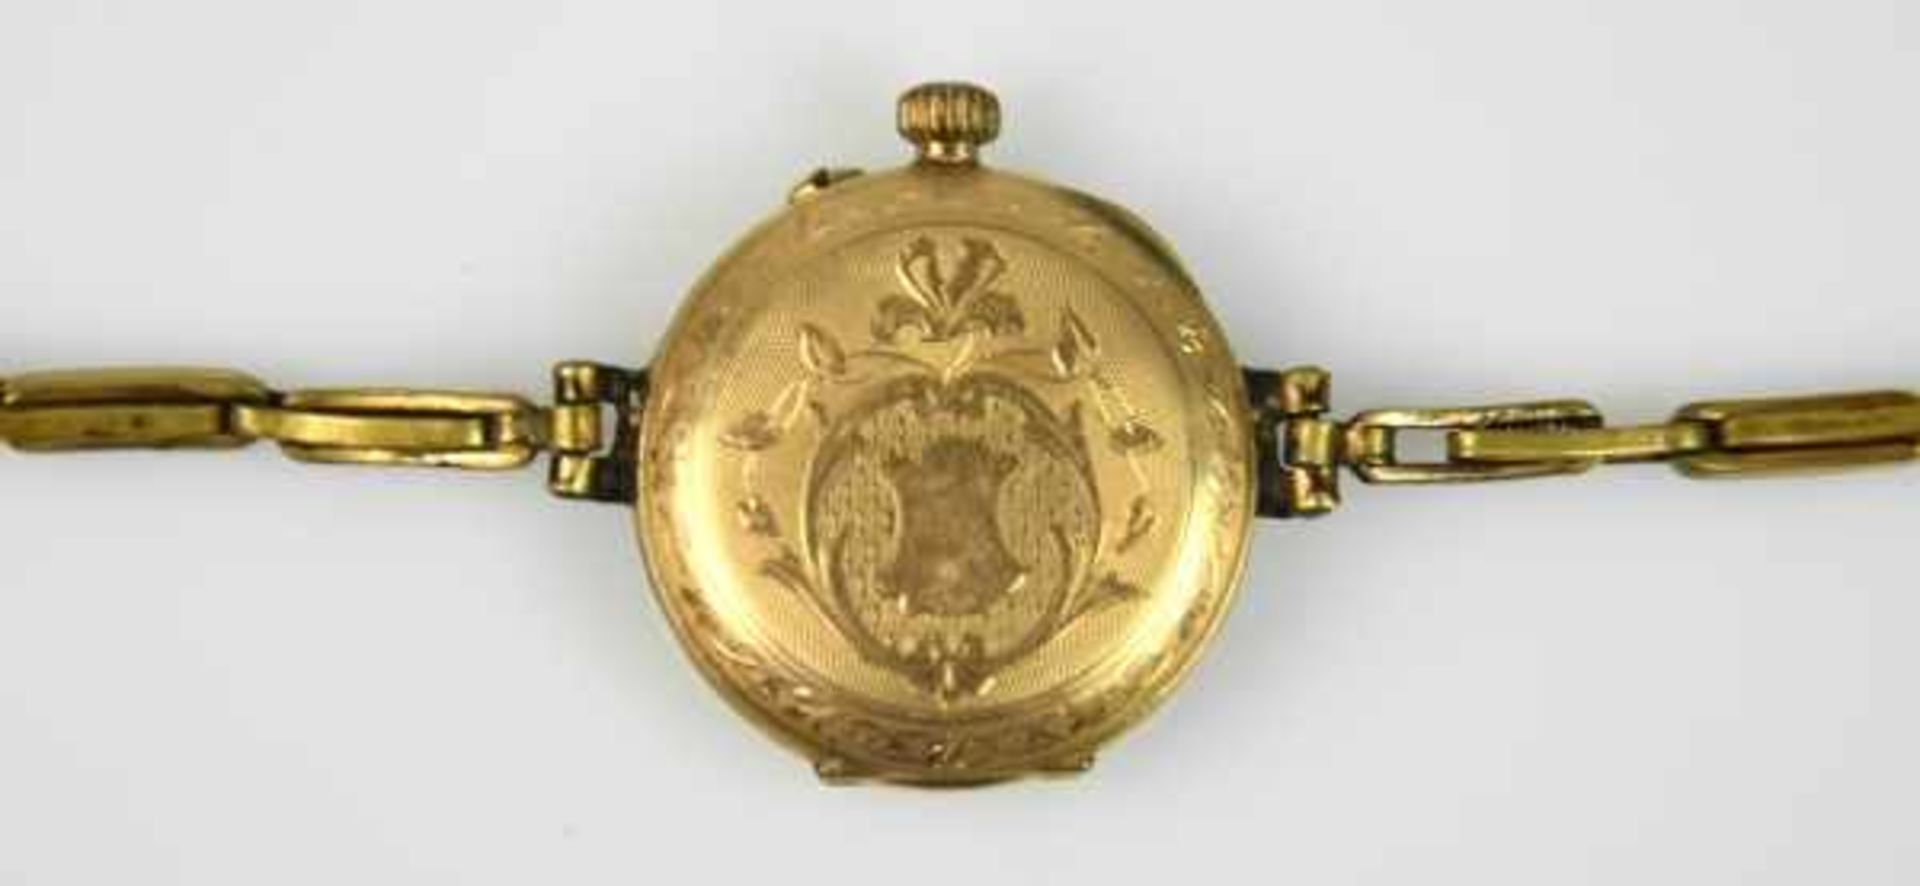 ARMBANDUHR rundes Goldgehäuse 14ct mit Jugendstildekor um 1900, Flexarmband, läuft an - Bild 3 aus 3